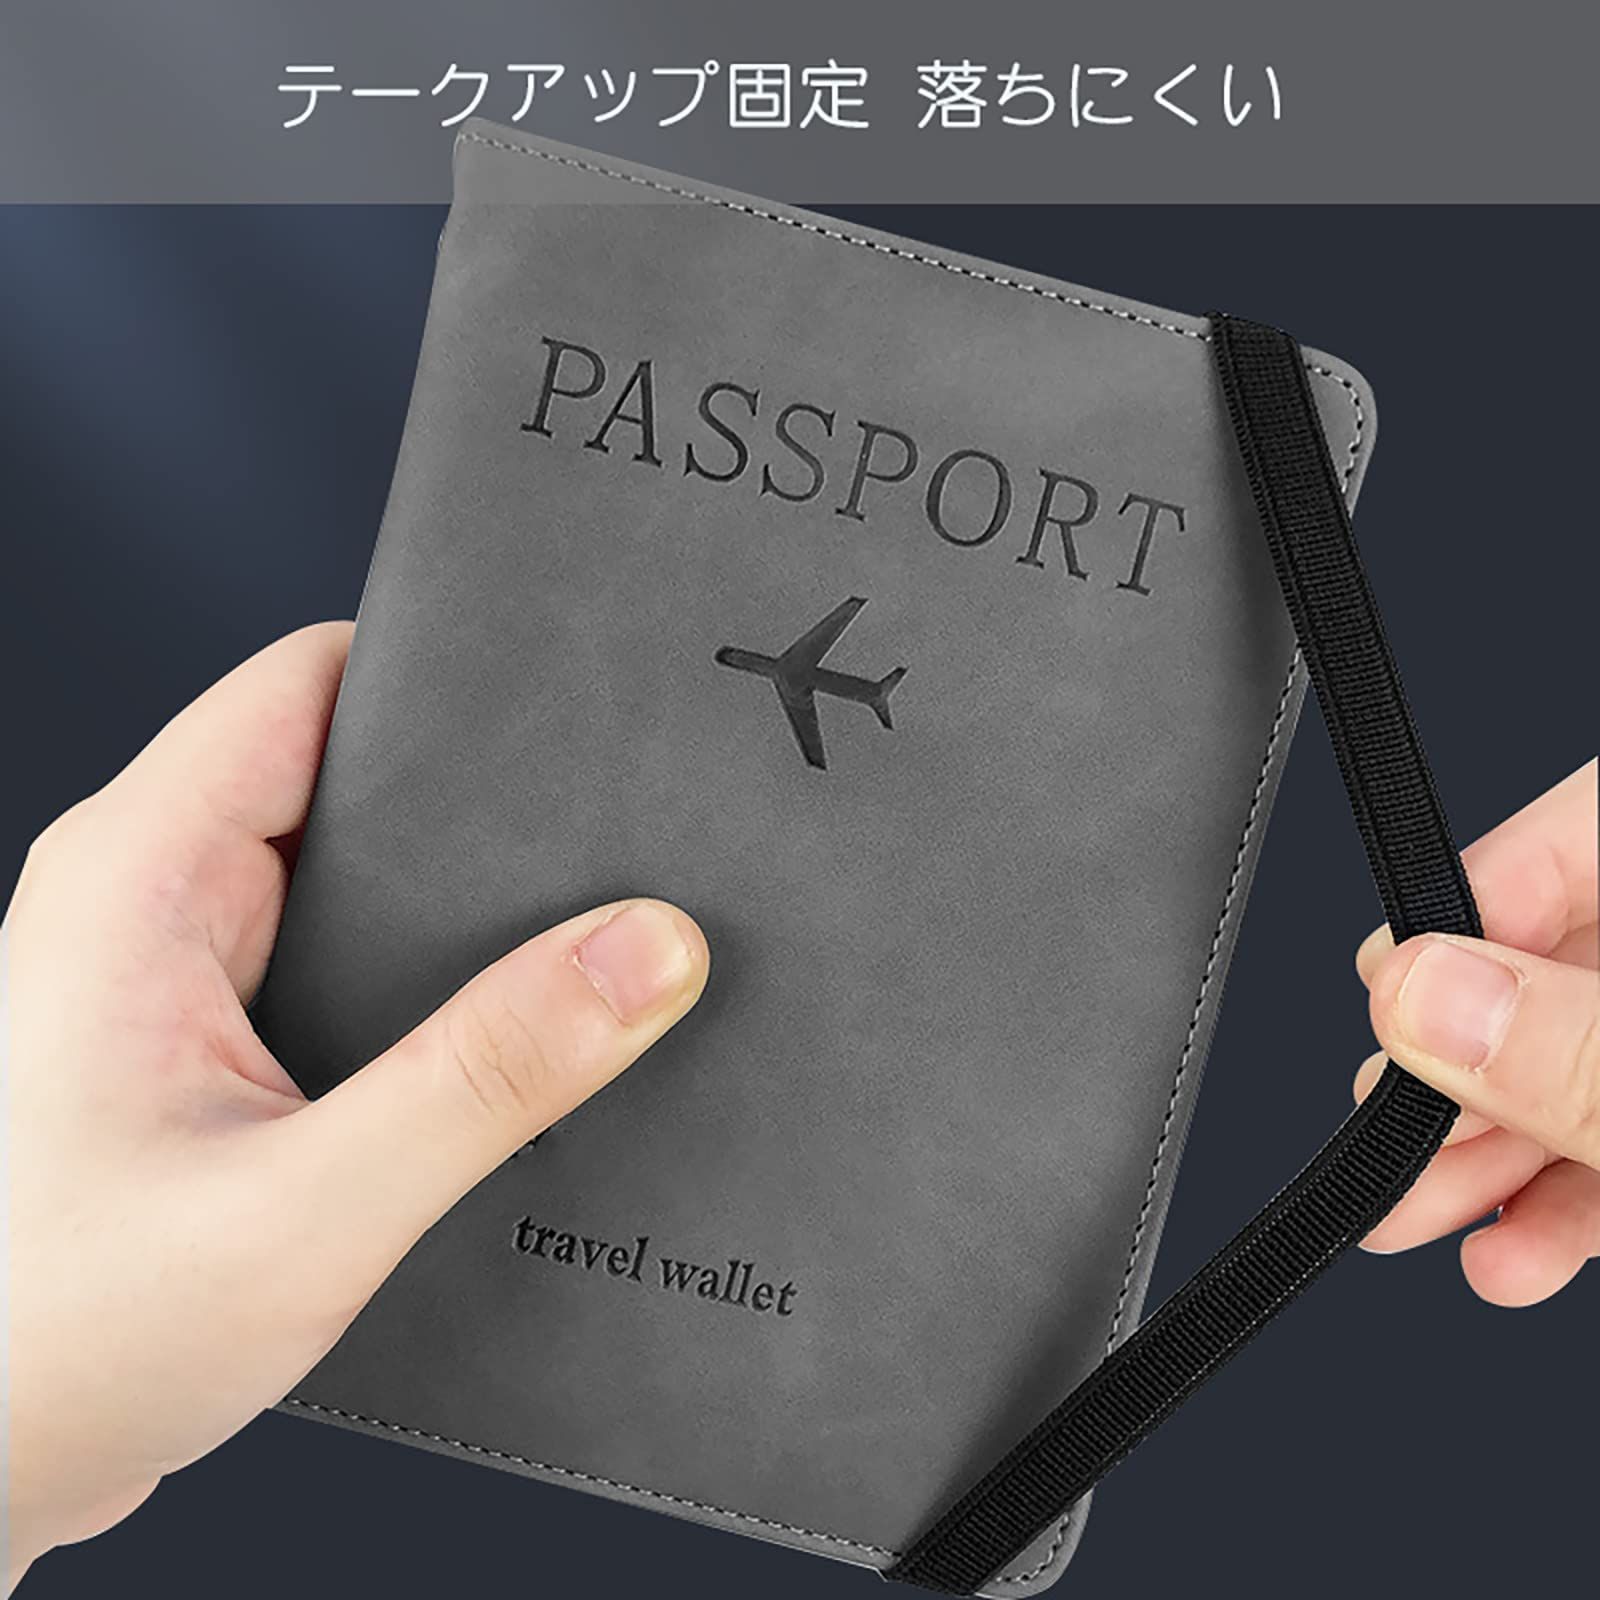 TRkin パスポートケース スキミング防止 パスポートカバー パスポート